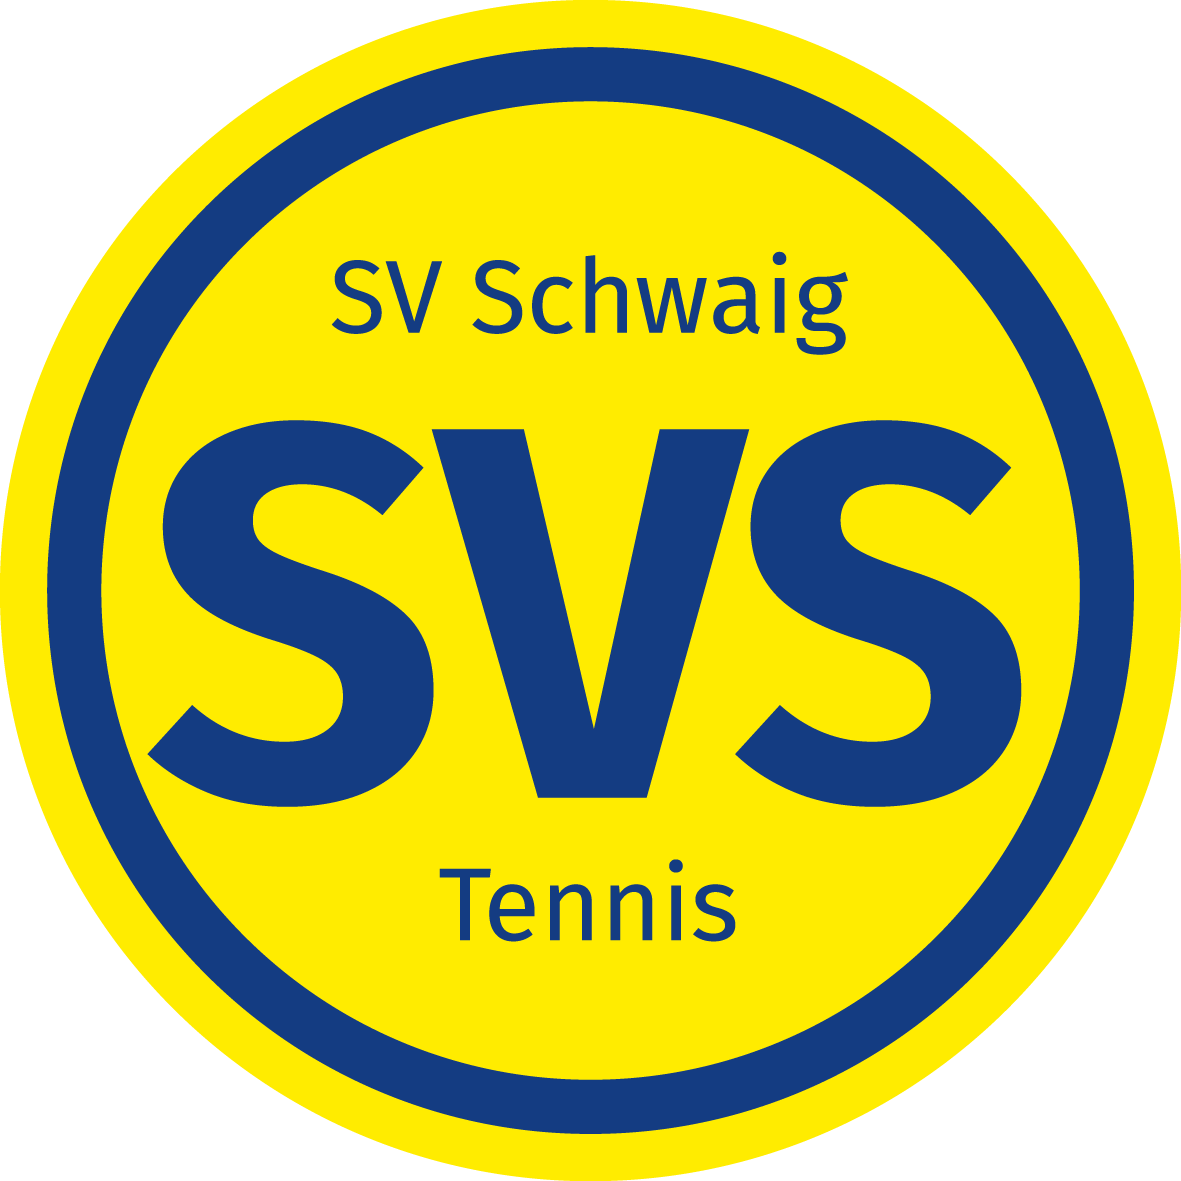 SV Schwaig Tennis